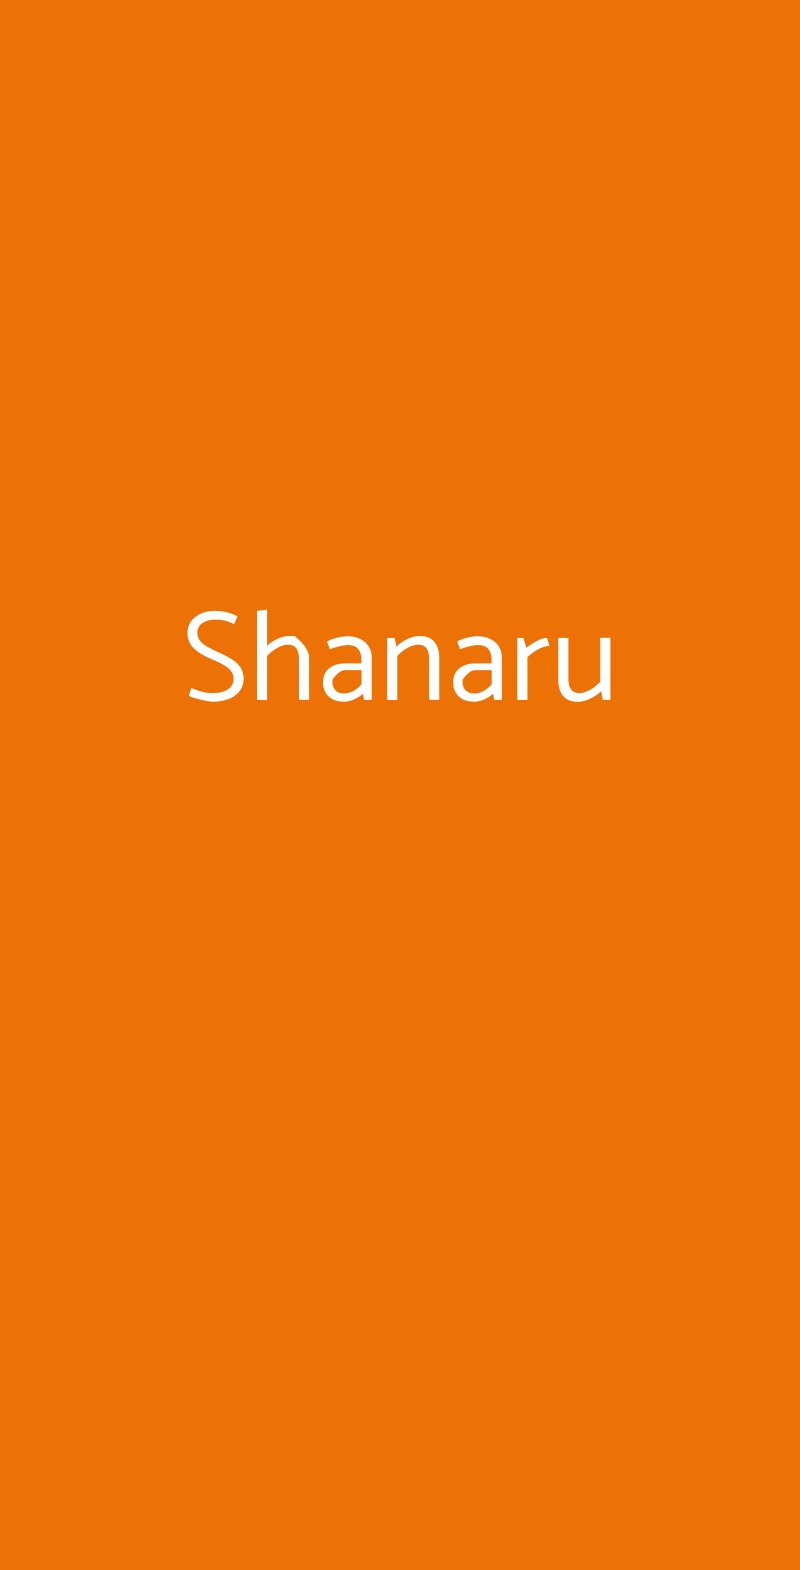 Shanaru Abano Terme menù 1 pagina